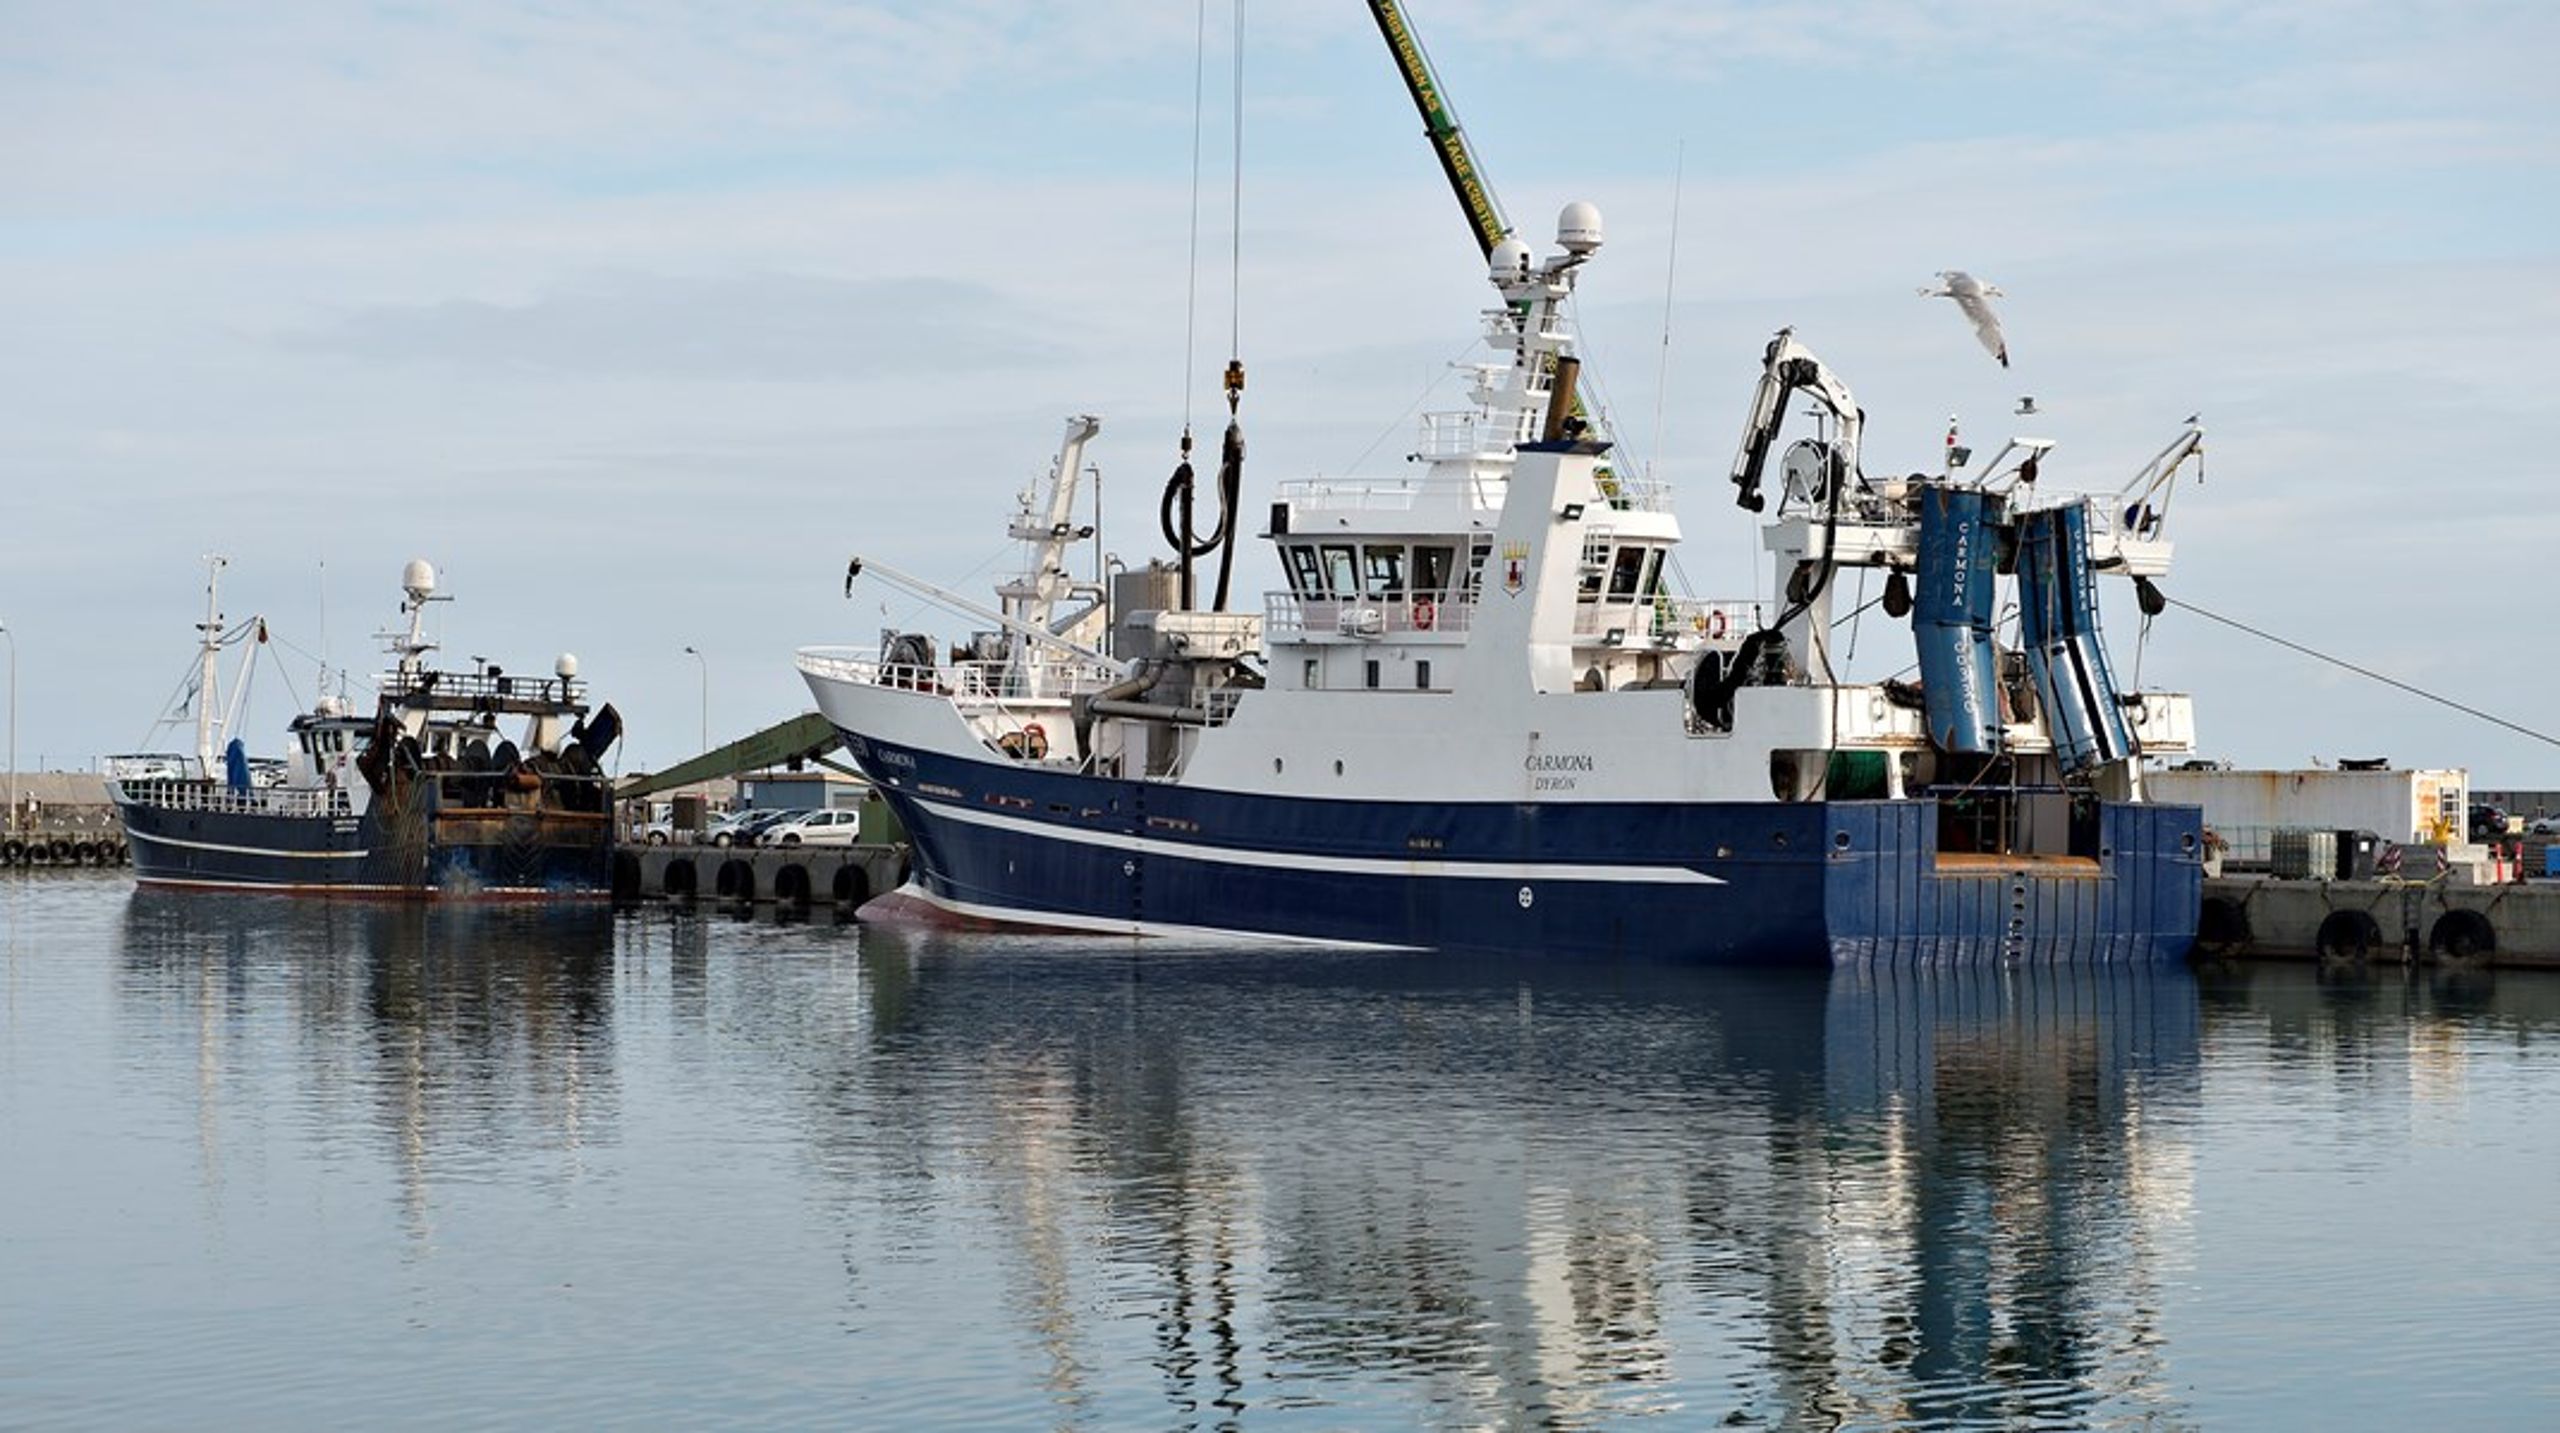 Alt i alt bør vi overveje at gå til fiskeriet på en måde i Danmark, så økosystemerne til havs ikke går i stykker, og så der er fisk til de fremtidige generationer, skriver Alexander Holm.